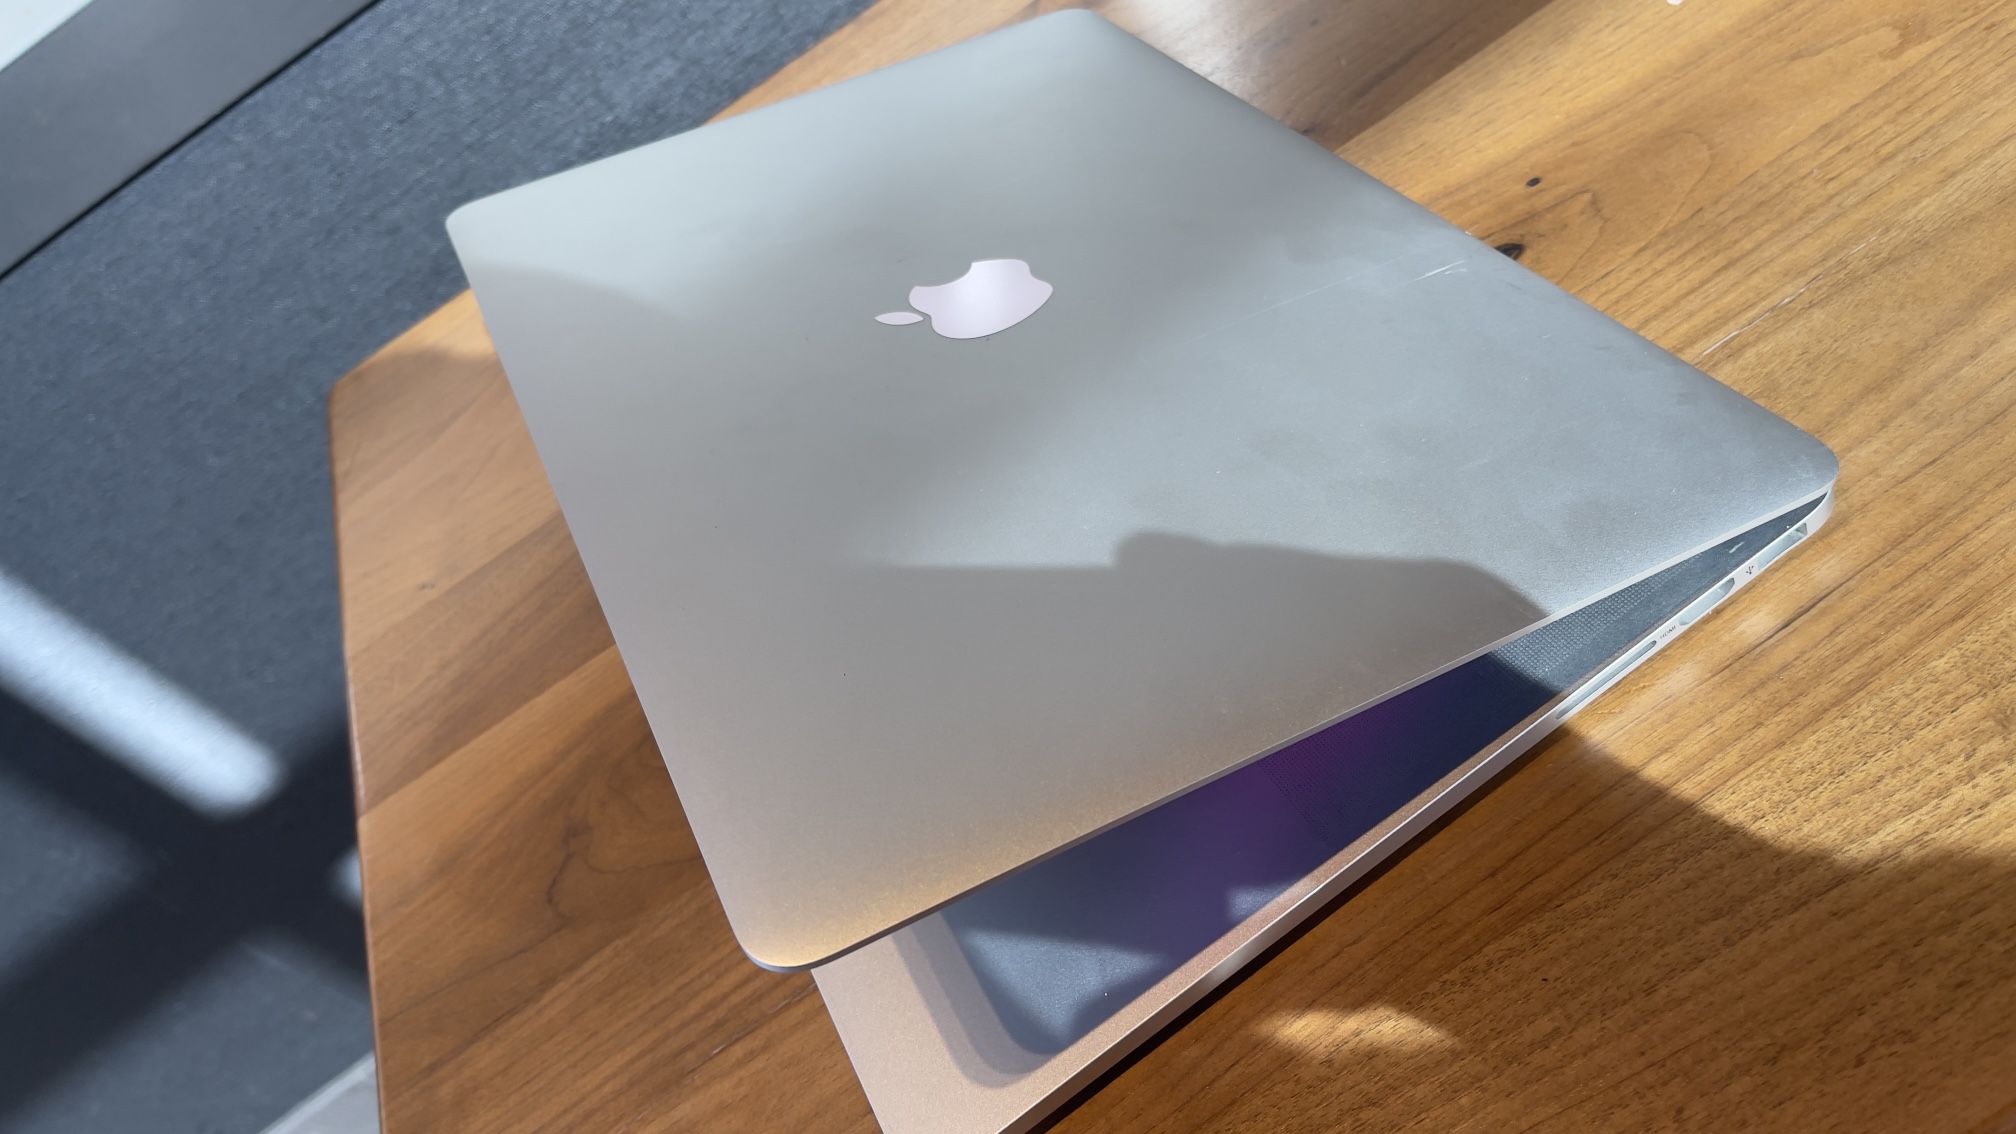 Apple MacBook Pro 15” Retina Quad Core I7; 16GB Ram/256GB SSD $375